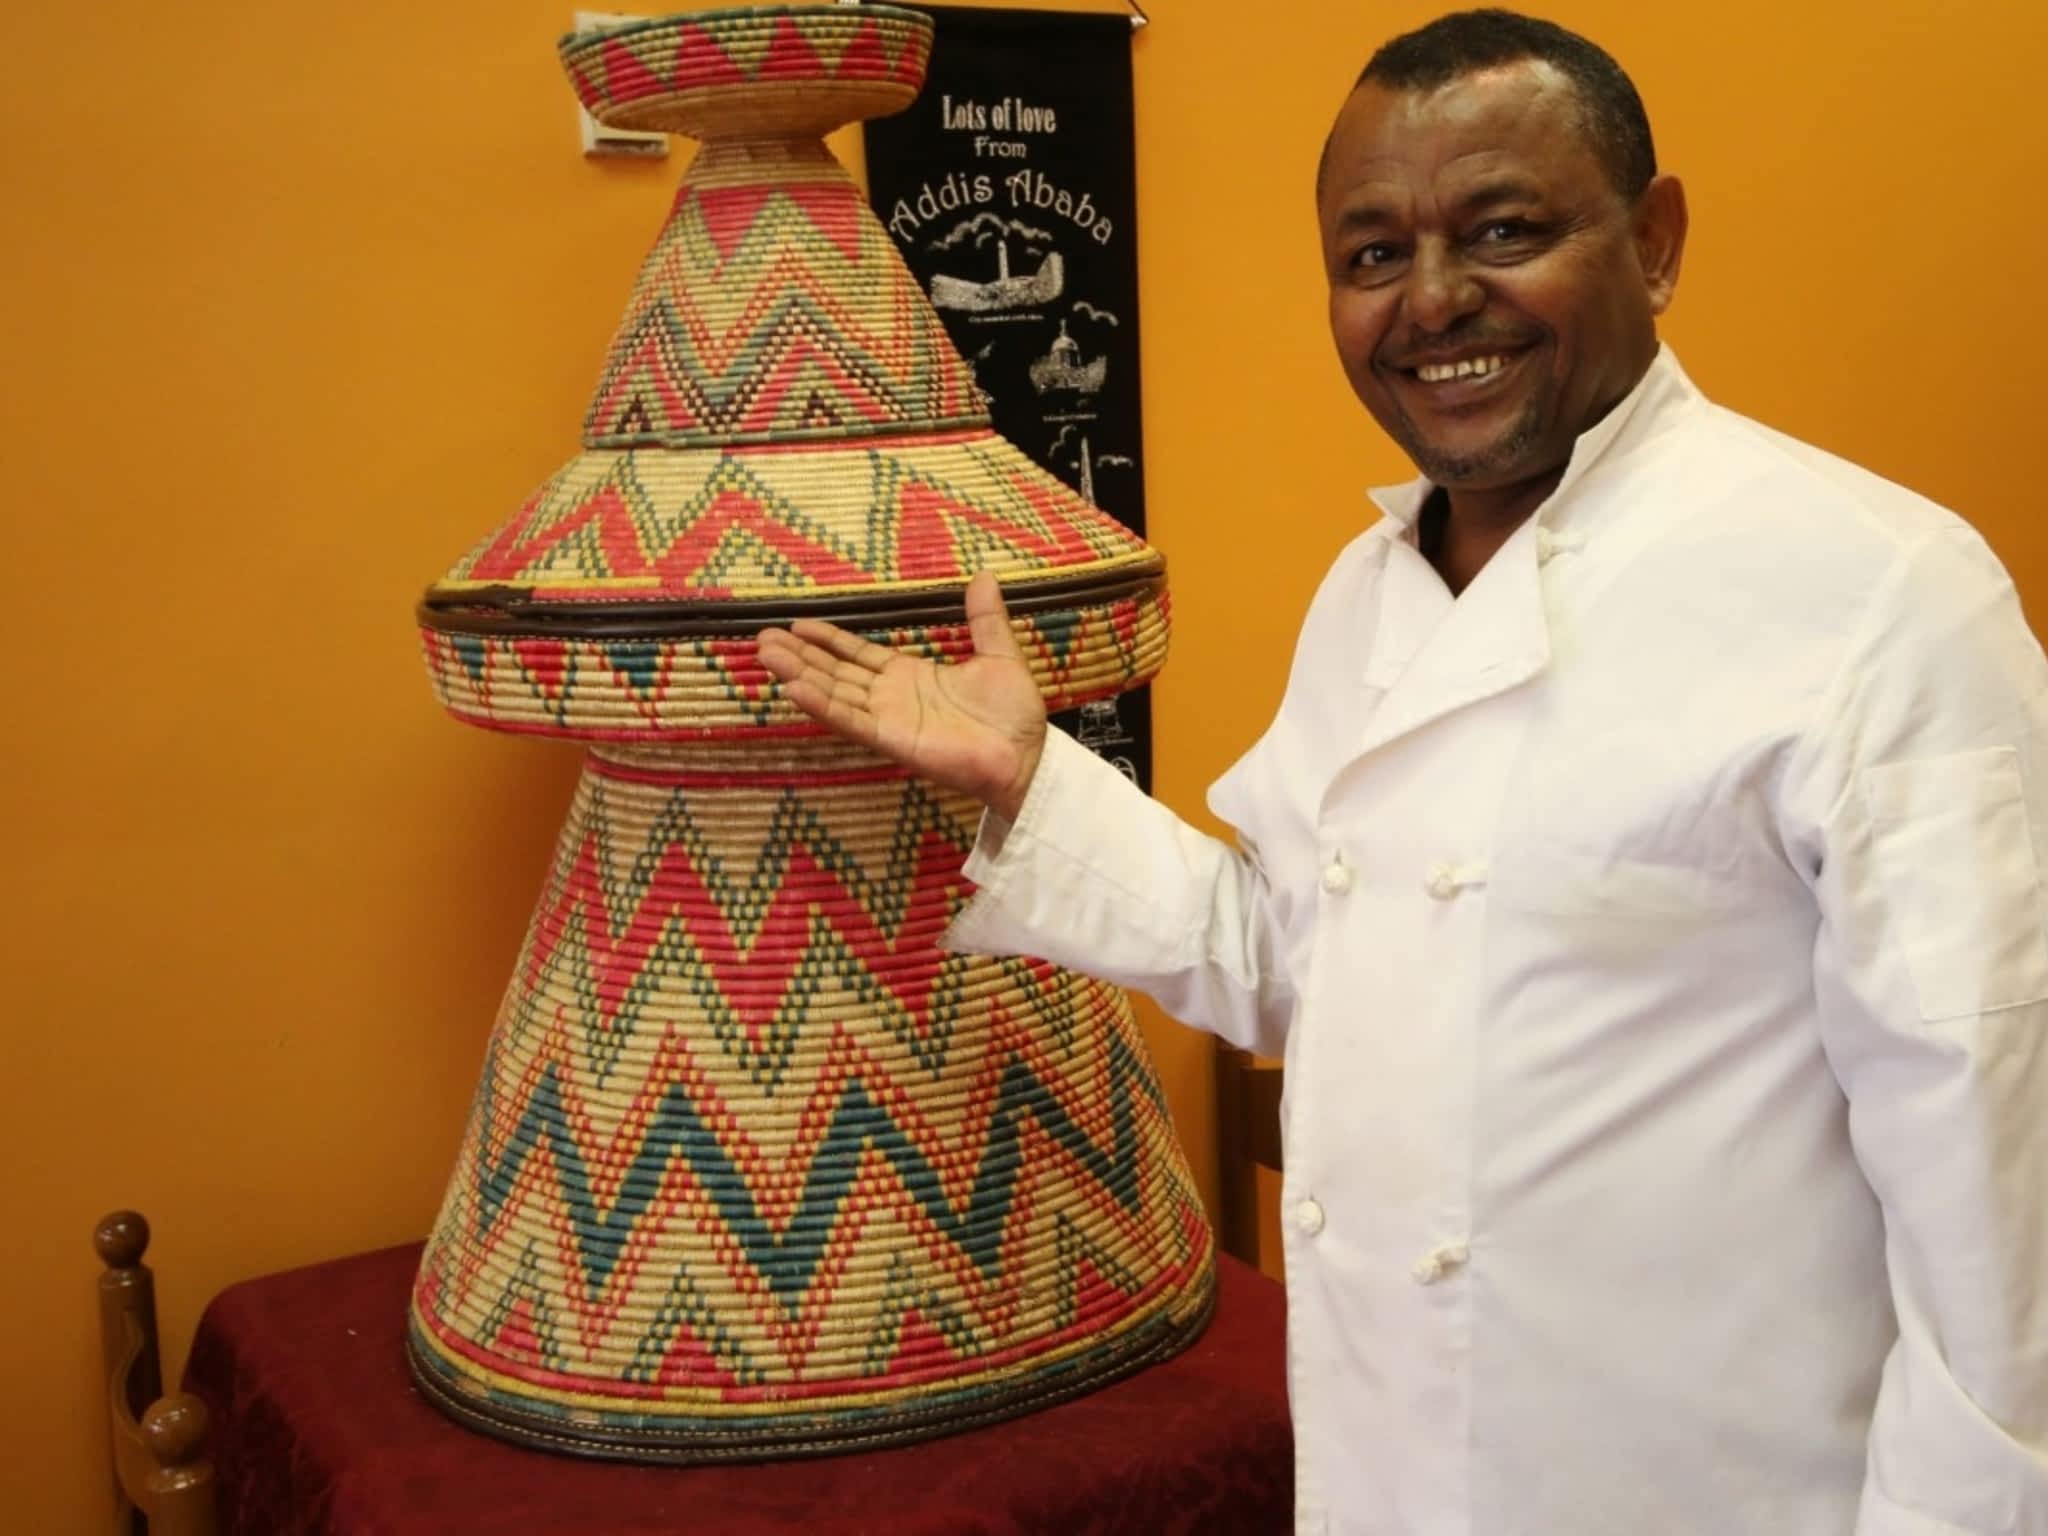 photo Abyssinia Ethiopian Restaurant